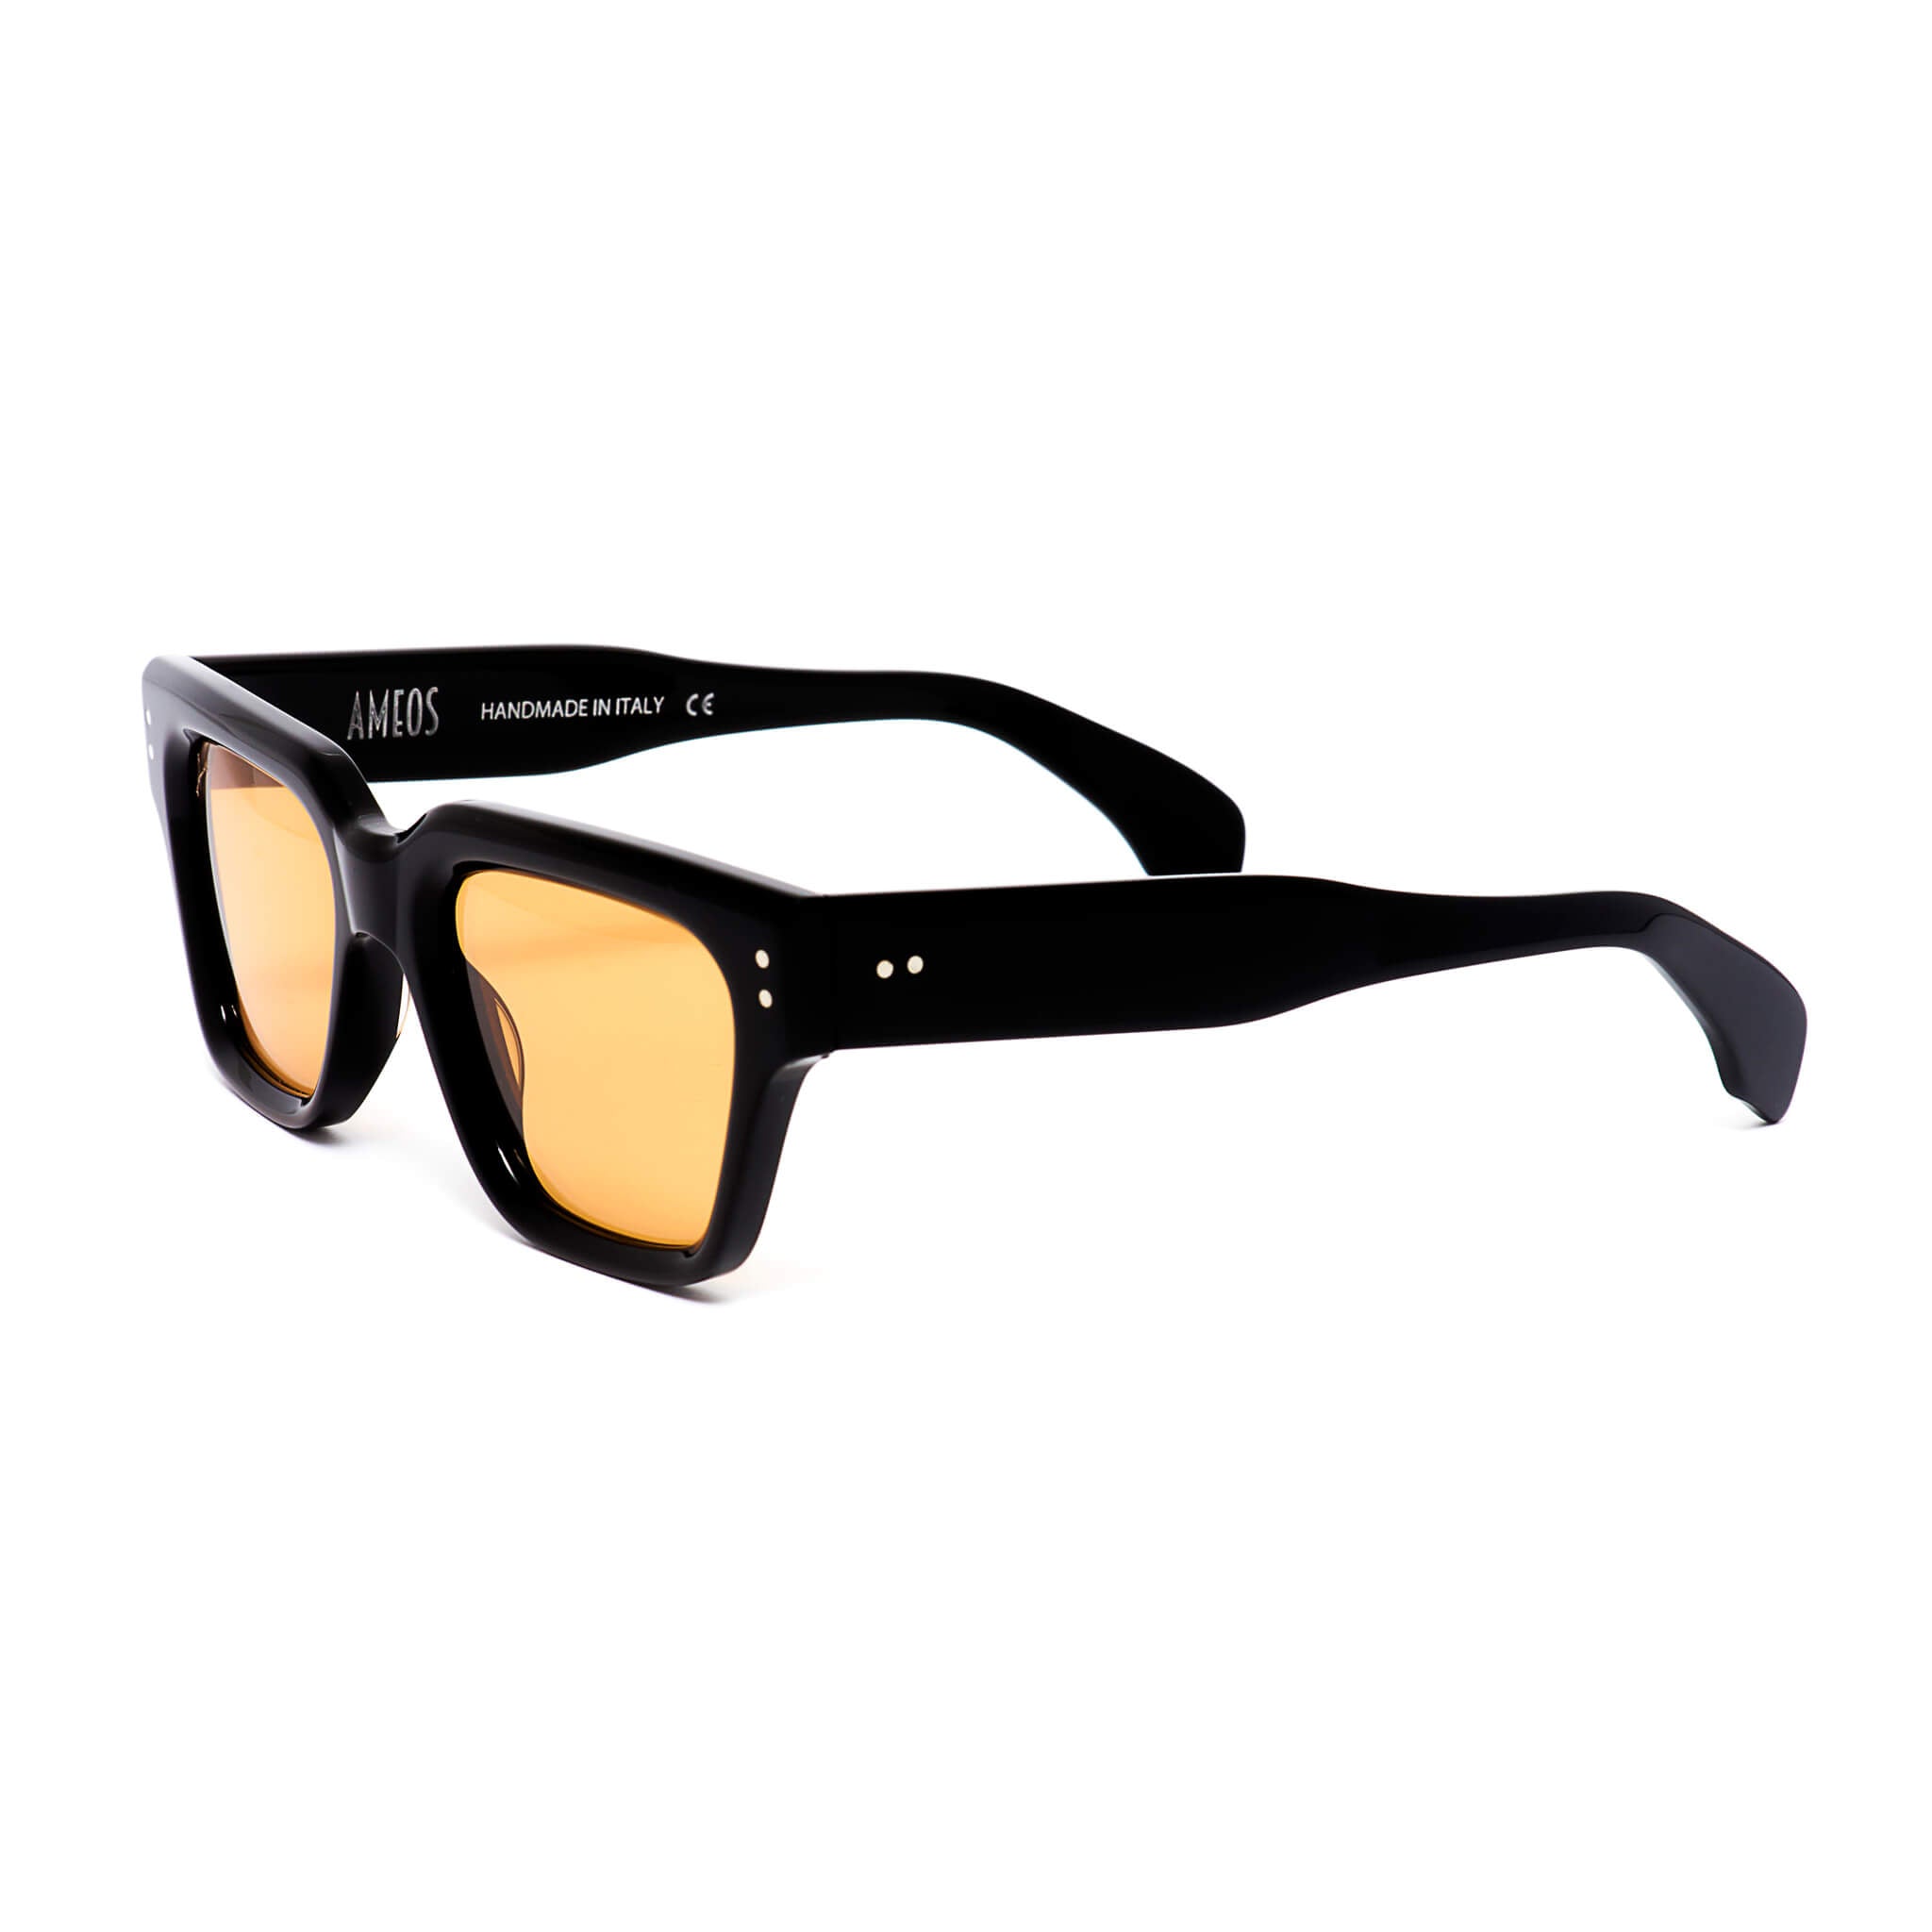 black frames sunglasses with orange lenses handmade in italy